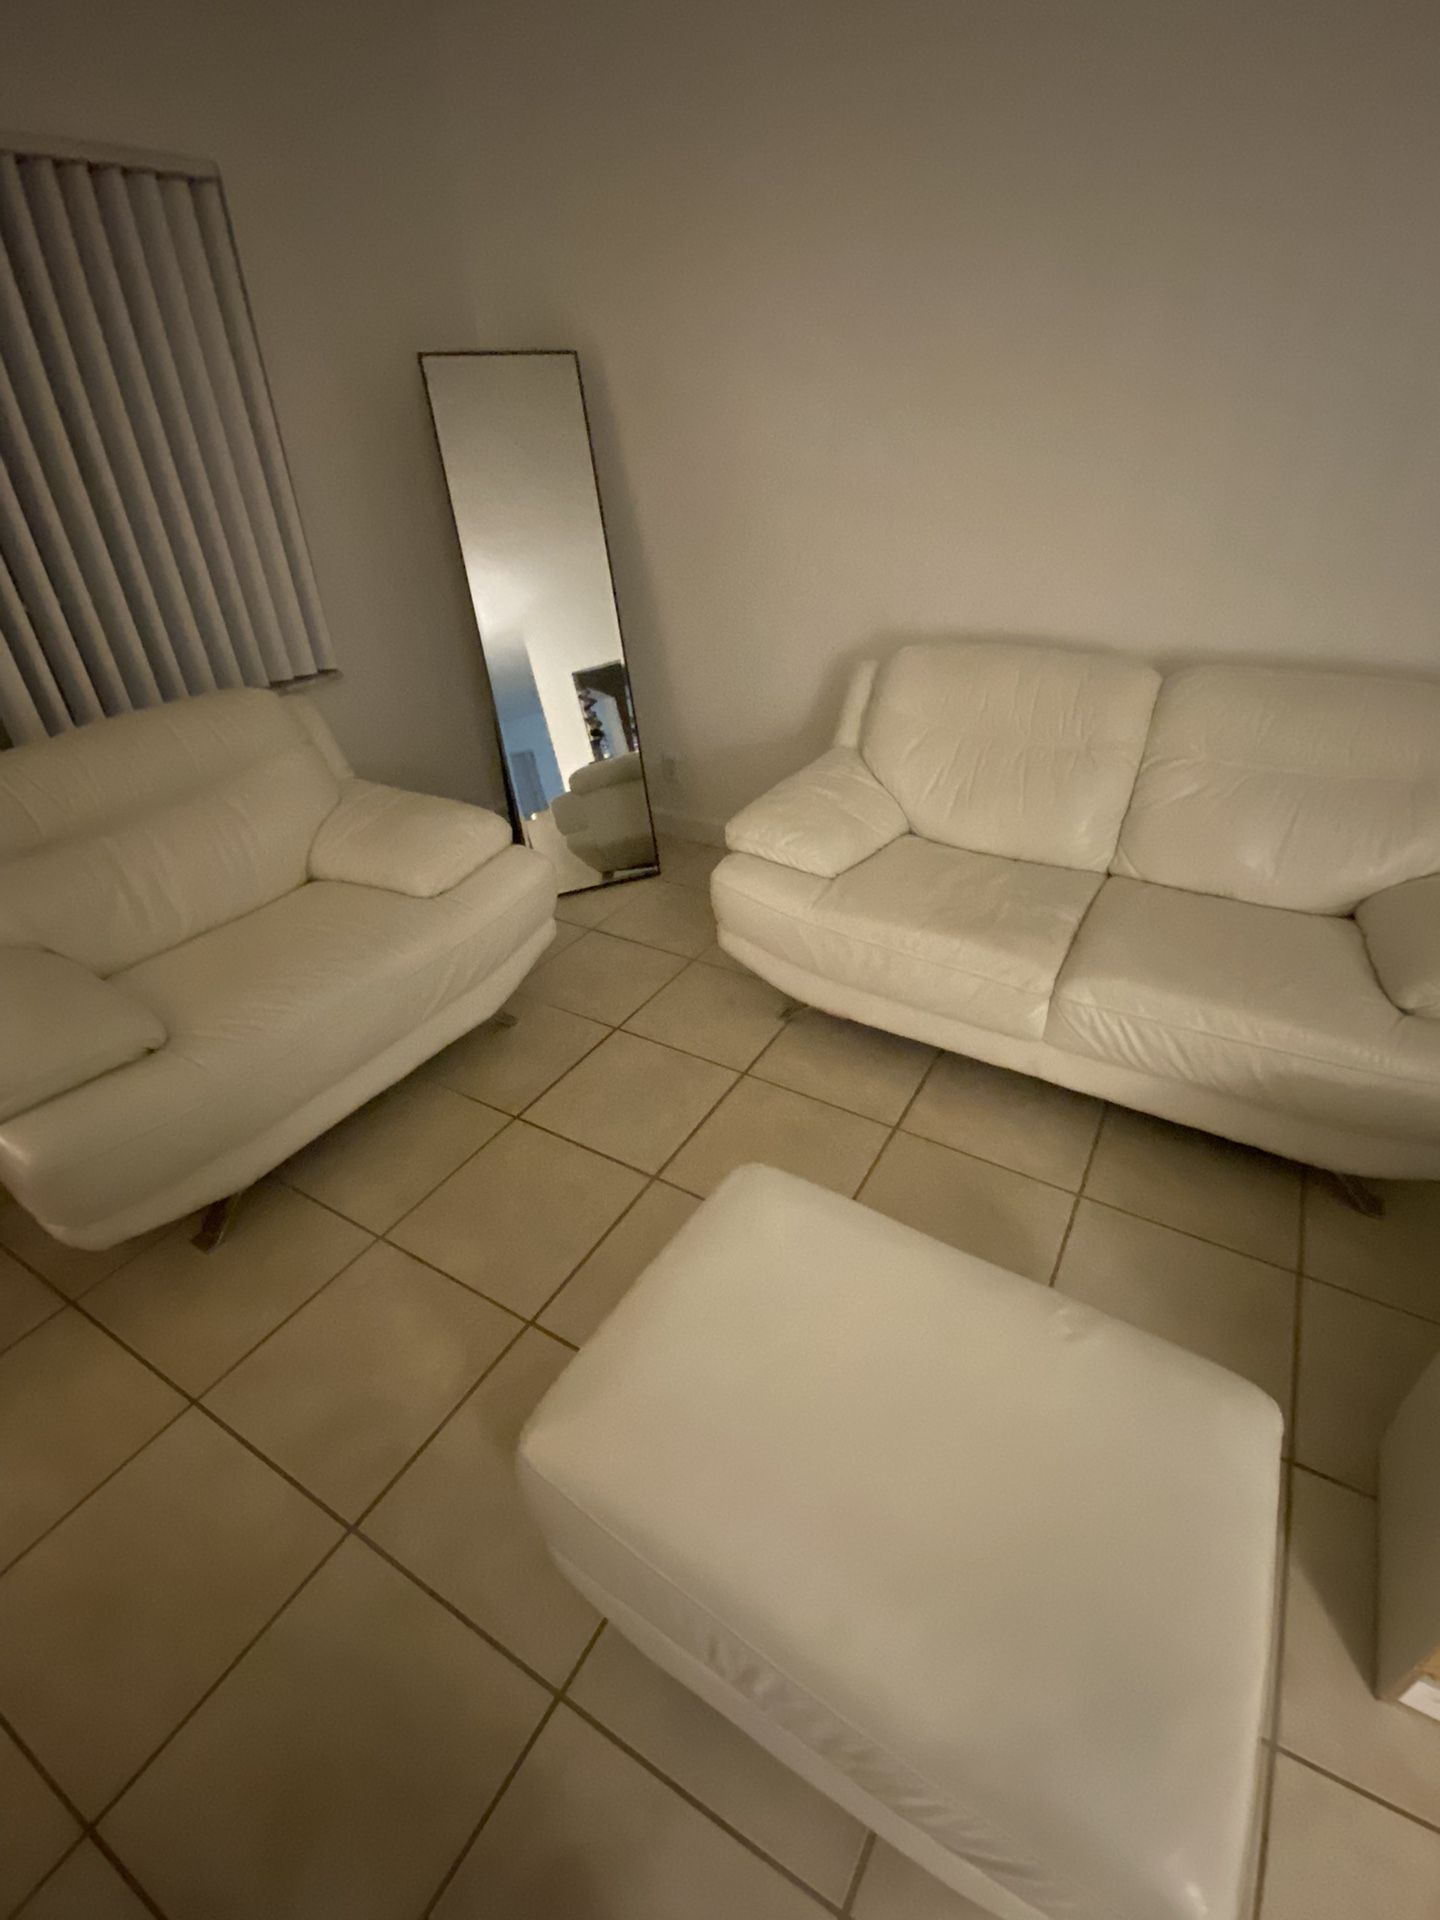 Sofia Vergara  Living Room Set 